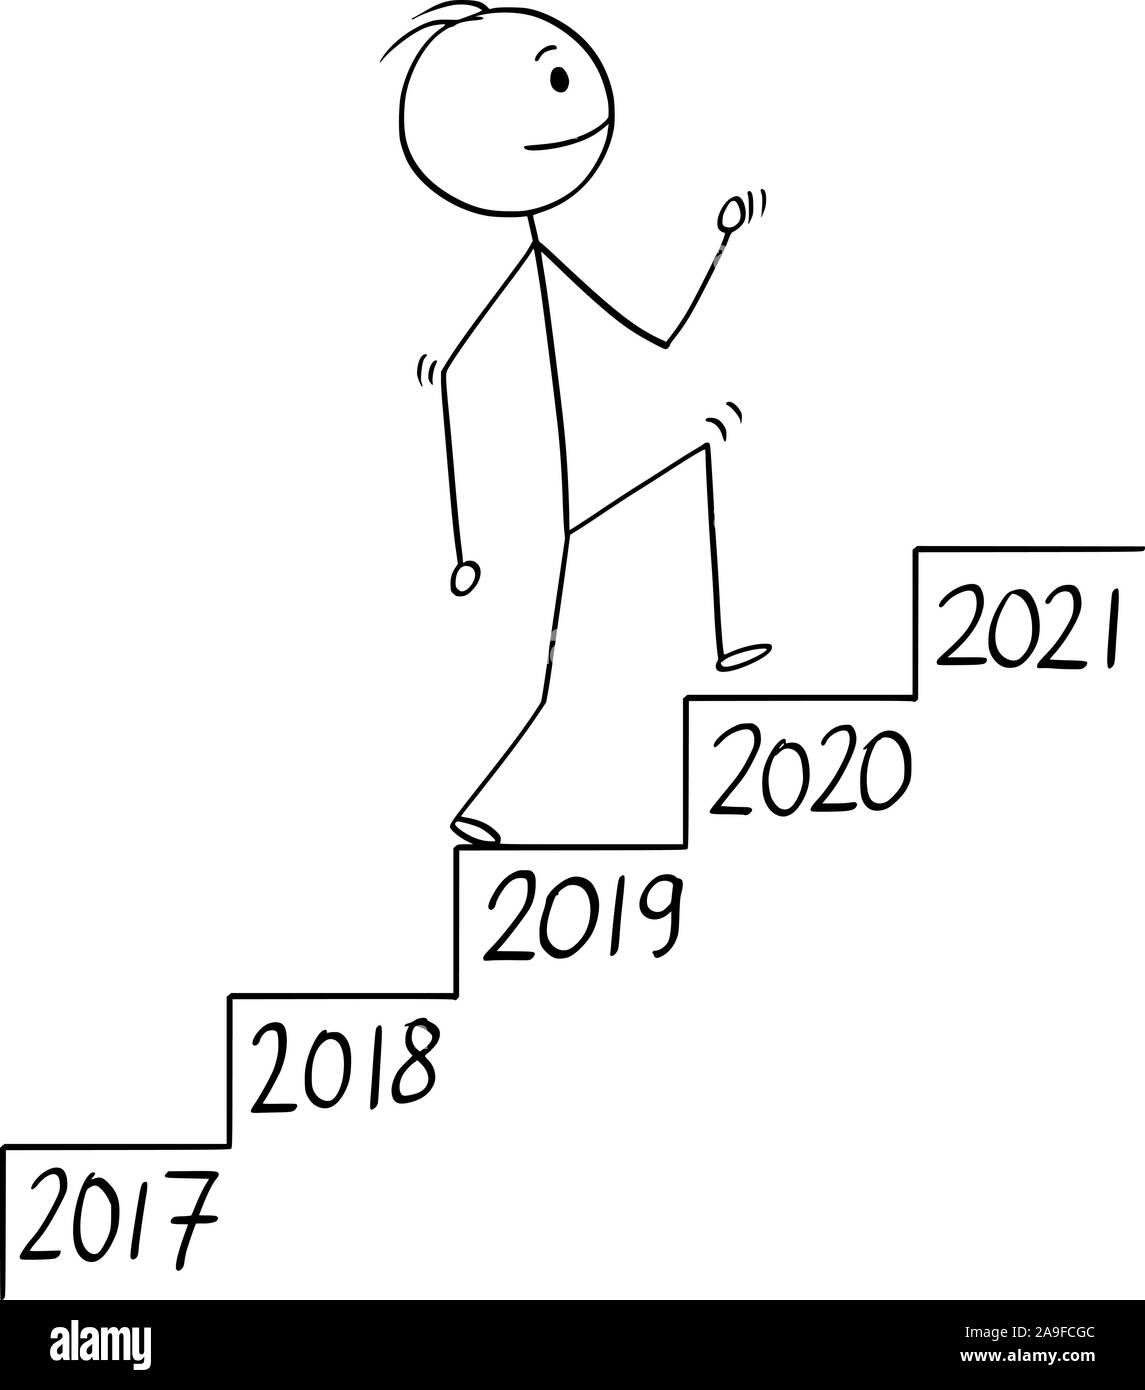 Vector cartoon stick figura disegno illustrazione concettuale dell'uomo o imprenditore salire le scale o la scala o scala con anno numero su ogni passo. Il concetto di business di crescita nel tempo. Illustrazione Vettoriale